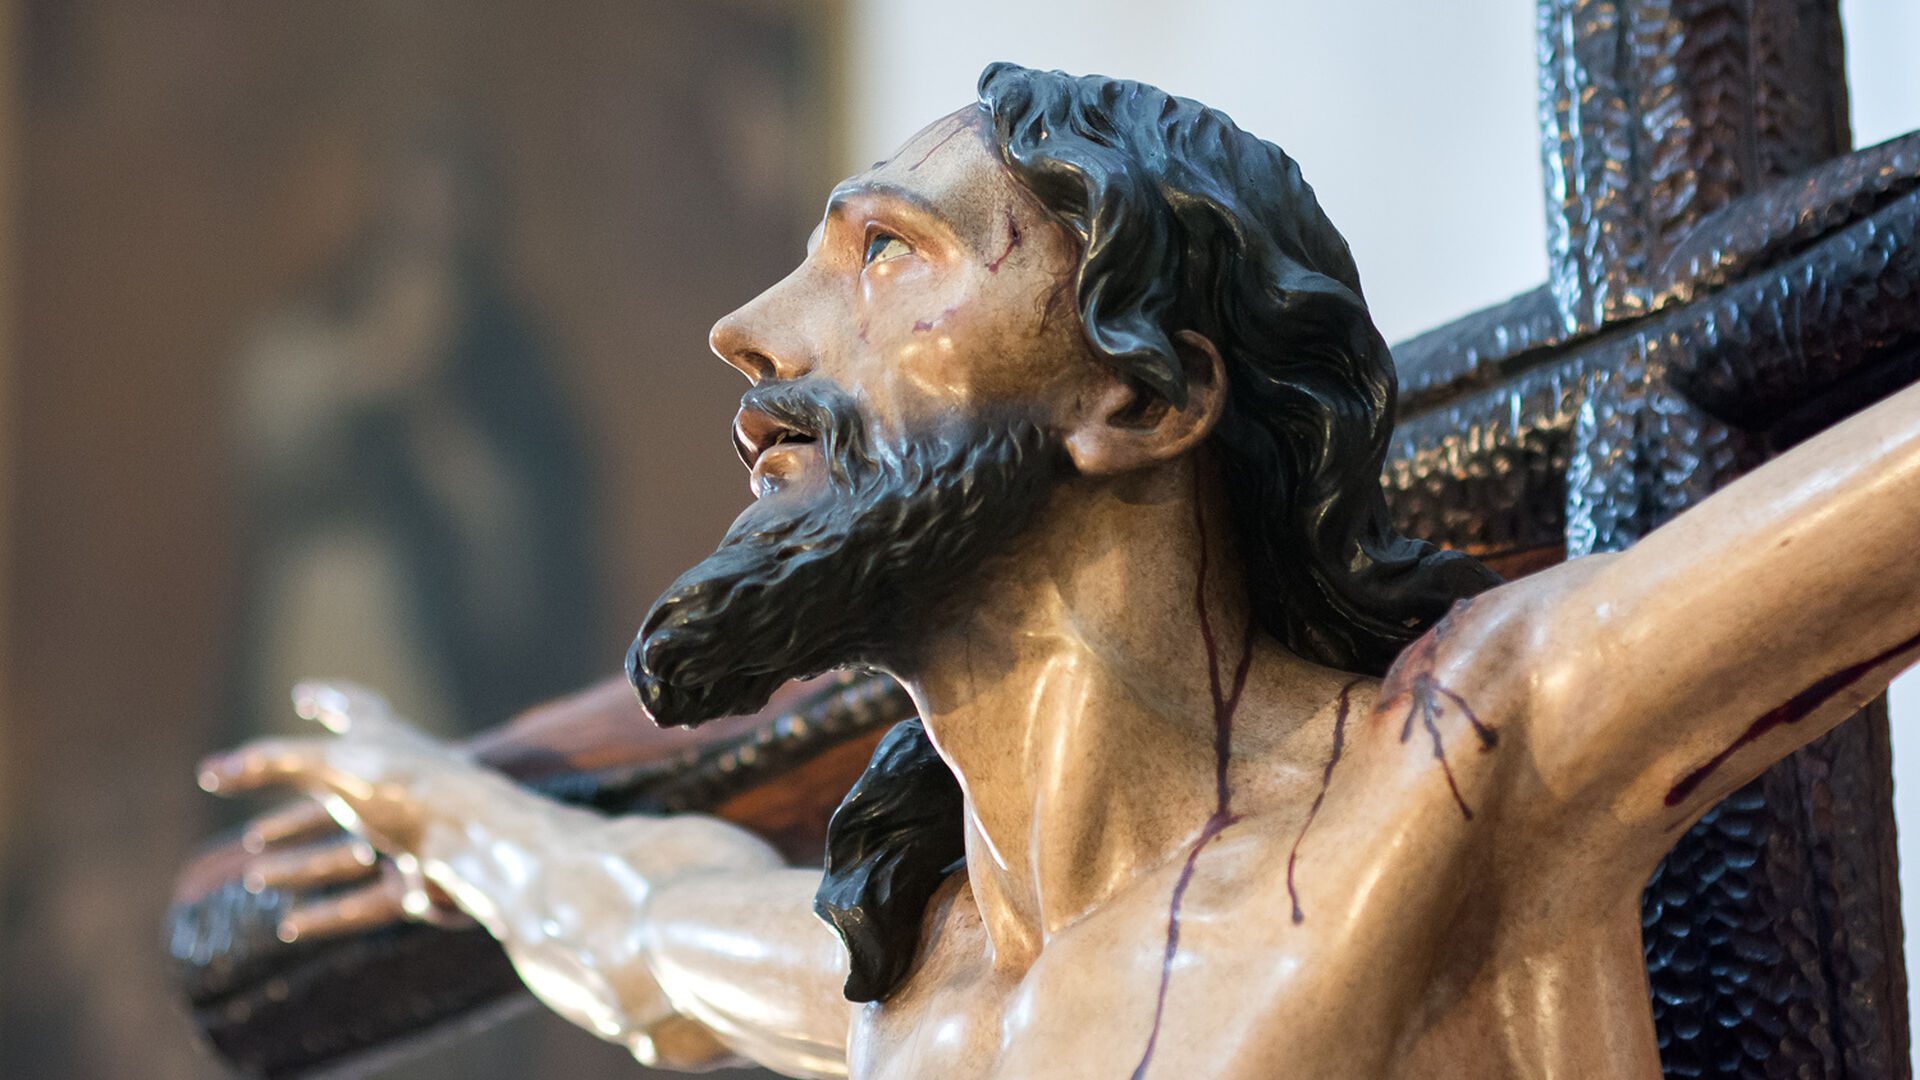 Horario e Itinerario del Vía Crucis del Cristo de las Misericordias de la Hdad de Santa Cruz de Sevilla este 11 de Marzo